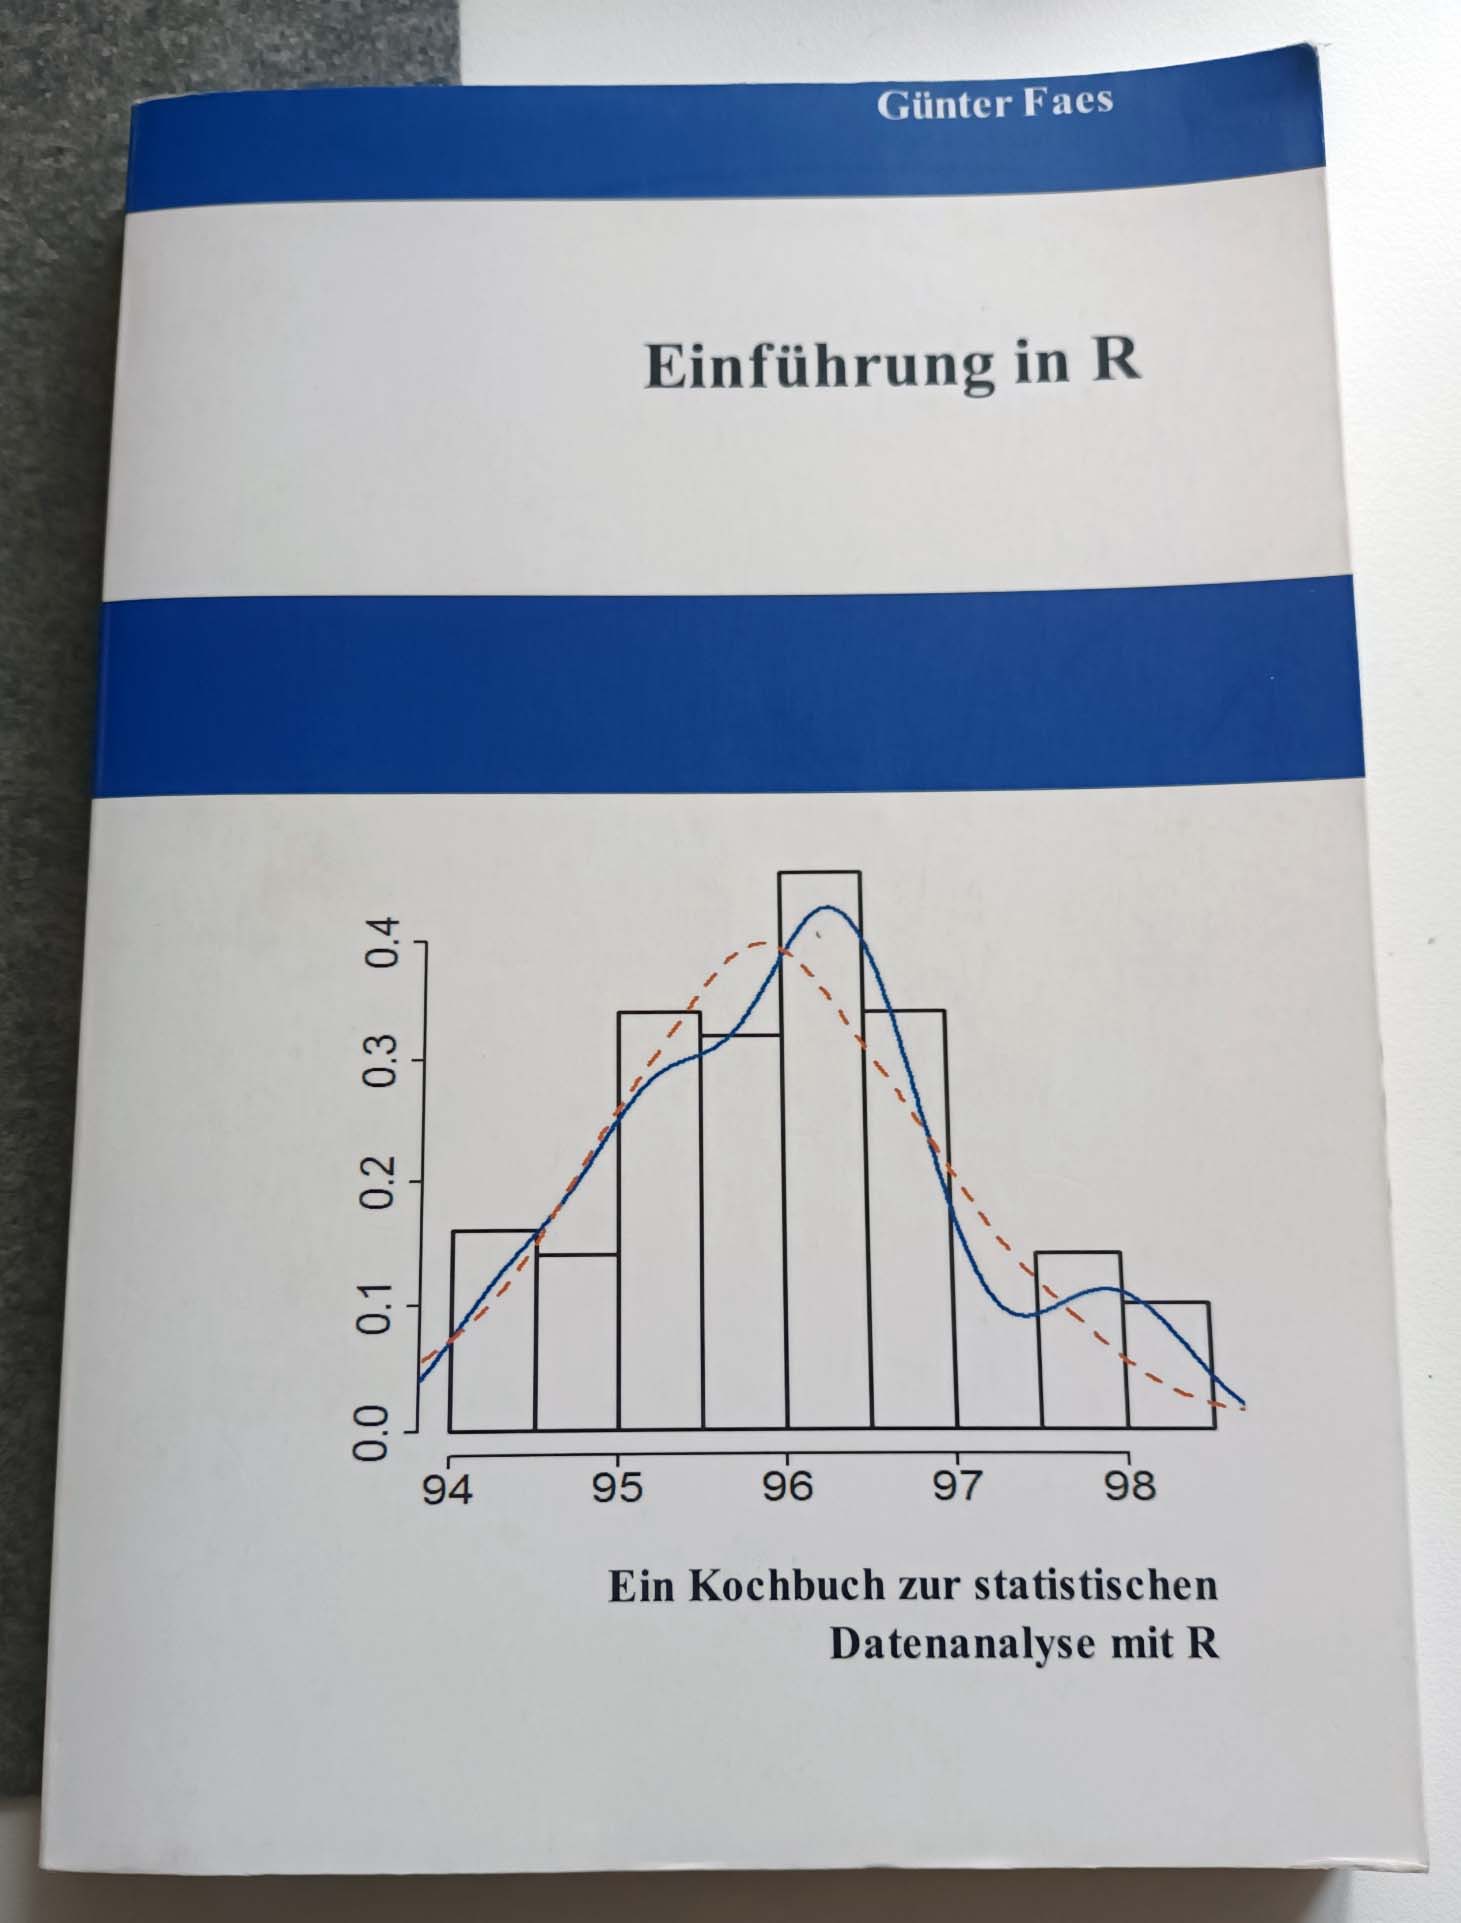 Einführung in R: Ein Kochbuch zur statistischen Datenanalyse mit R - Günter Faes